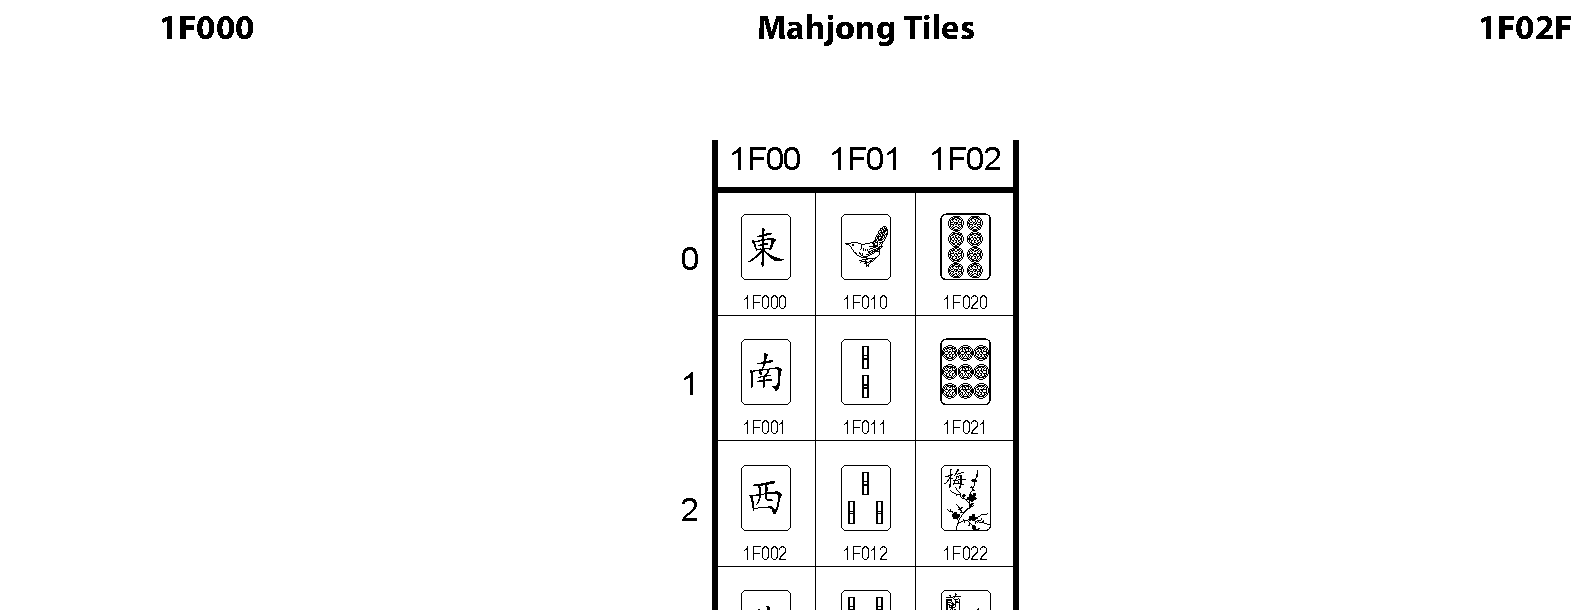 Unicode - Mahjong Tiles